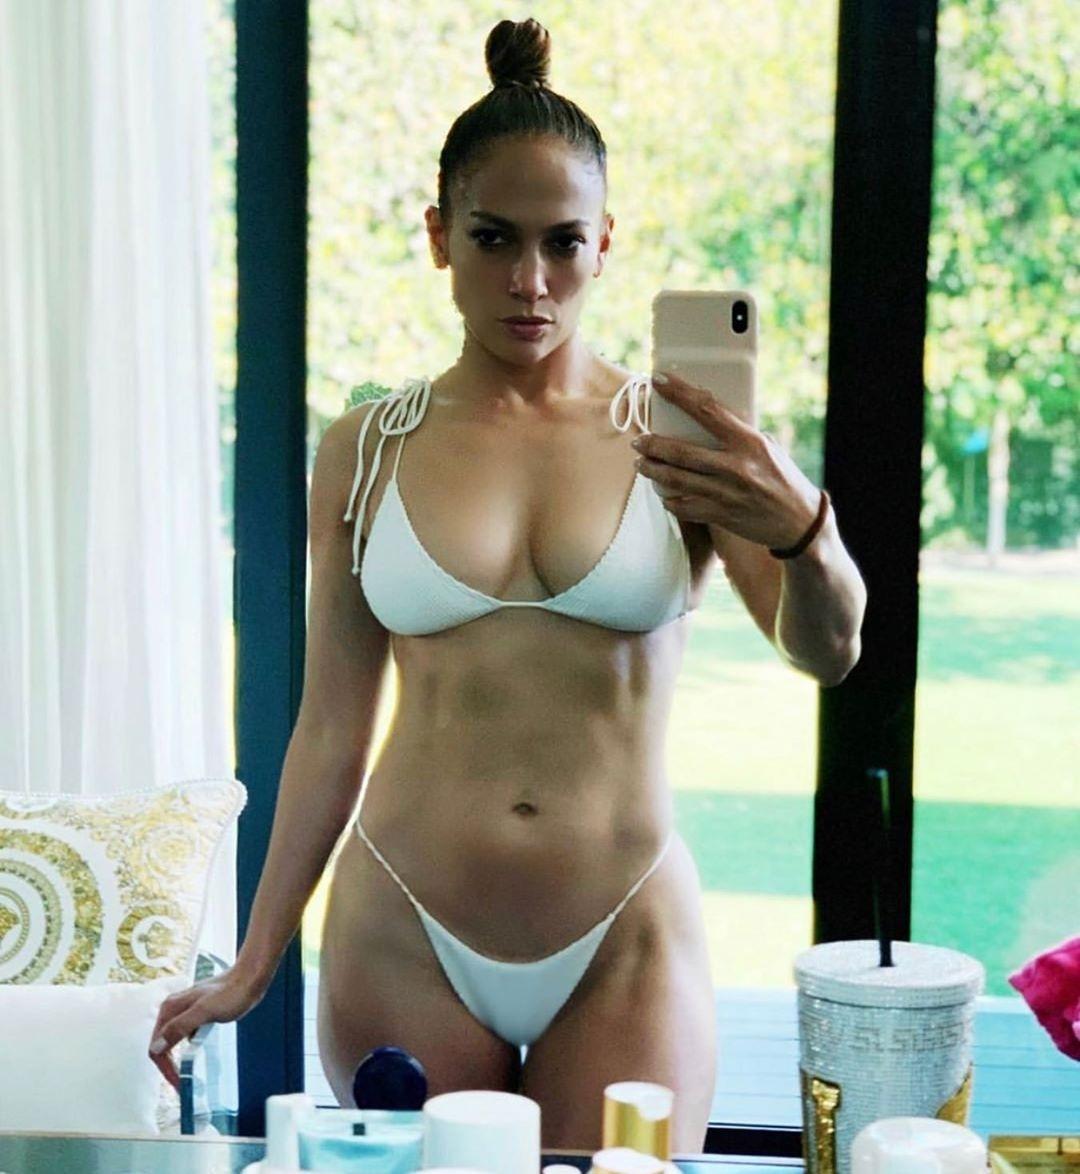 Jennifer Lopez surpreende com foto de biquíni e sem maquiagem: "Relaxada" -  16/02/2020 - UOL Entretenimento